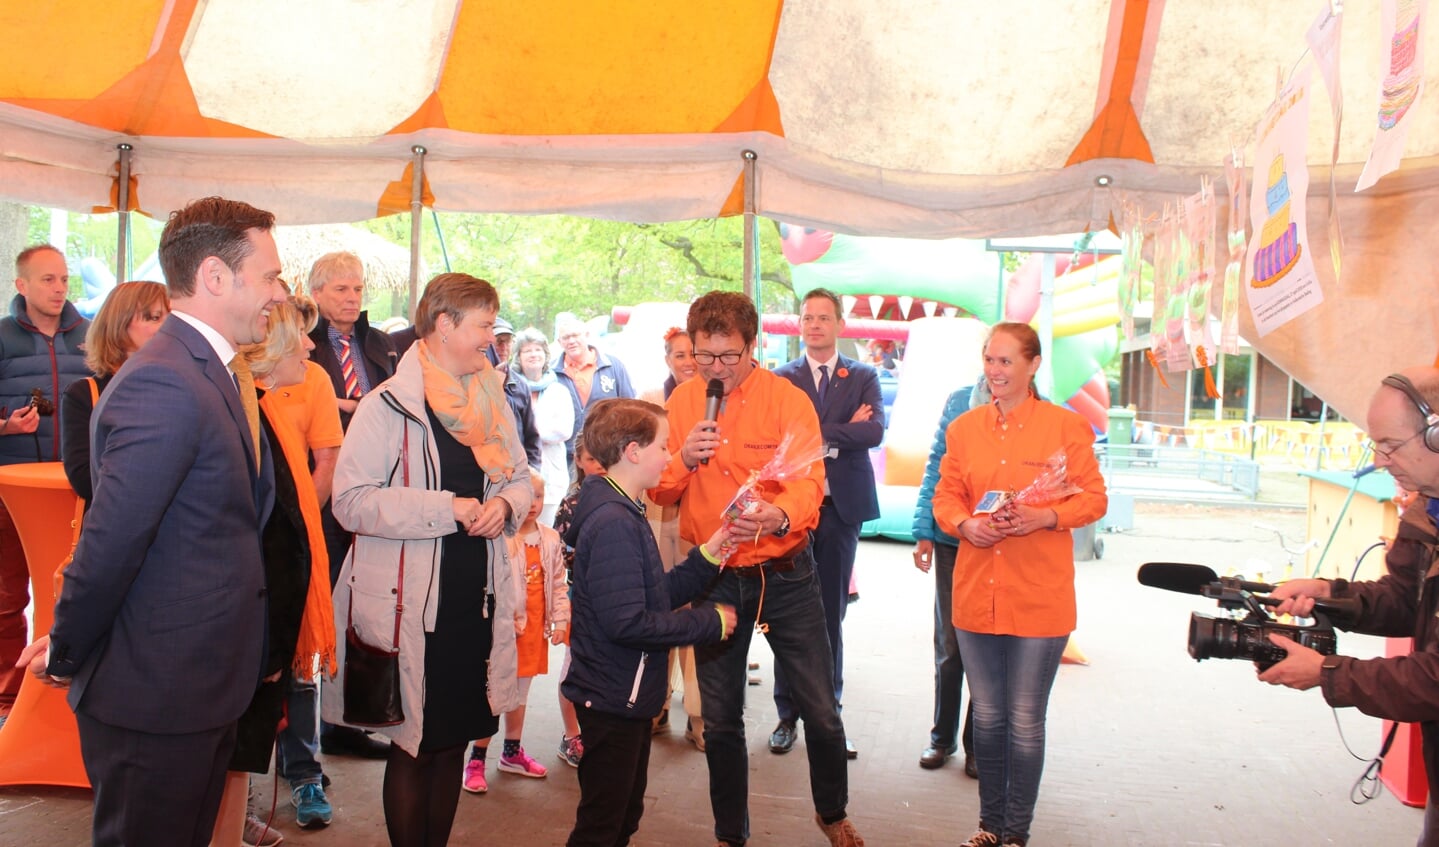 De vooraf ingeleverde ‘Versier de taart’-kleurplaten zijn gejureerd en één van de winnaars ( Floris van der Heijden) ontvangt de hieraan verbonden prijs uit handen van Michiel Akkerman (voorzitter Oranjecomité). 